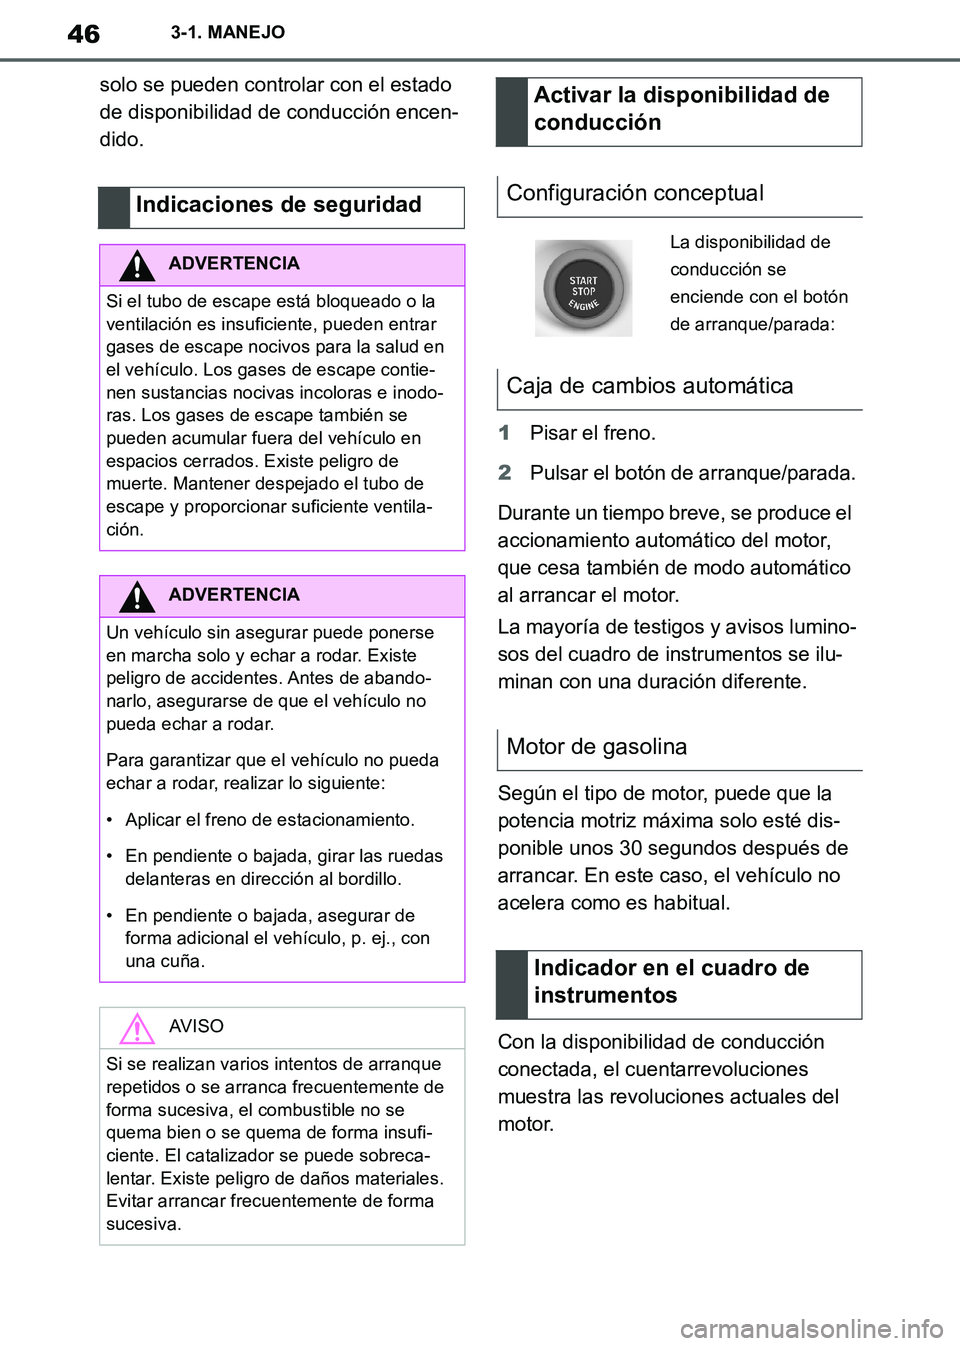 TOYOTA SUPRA 2019  Manuale de Empleo (in Spanish) 46
Supra Owners Manual_ES
3-1. MANEJO
solo se pueden controlar con el estado 
de disponibilidad de conducción encen-
dido.
1Pisar el freno.
2Pulsar el botón de arranque/parada.
Durante un tiempo br